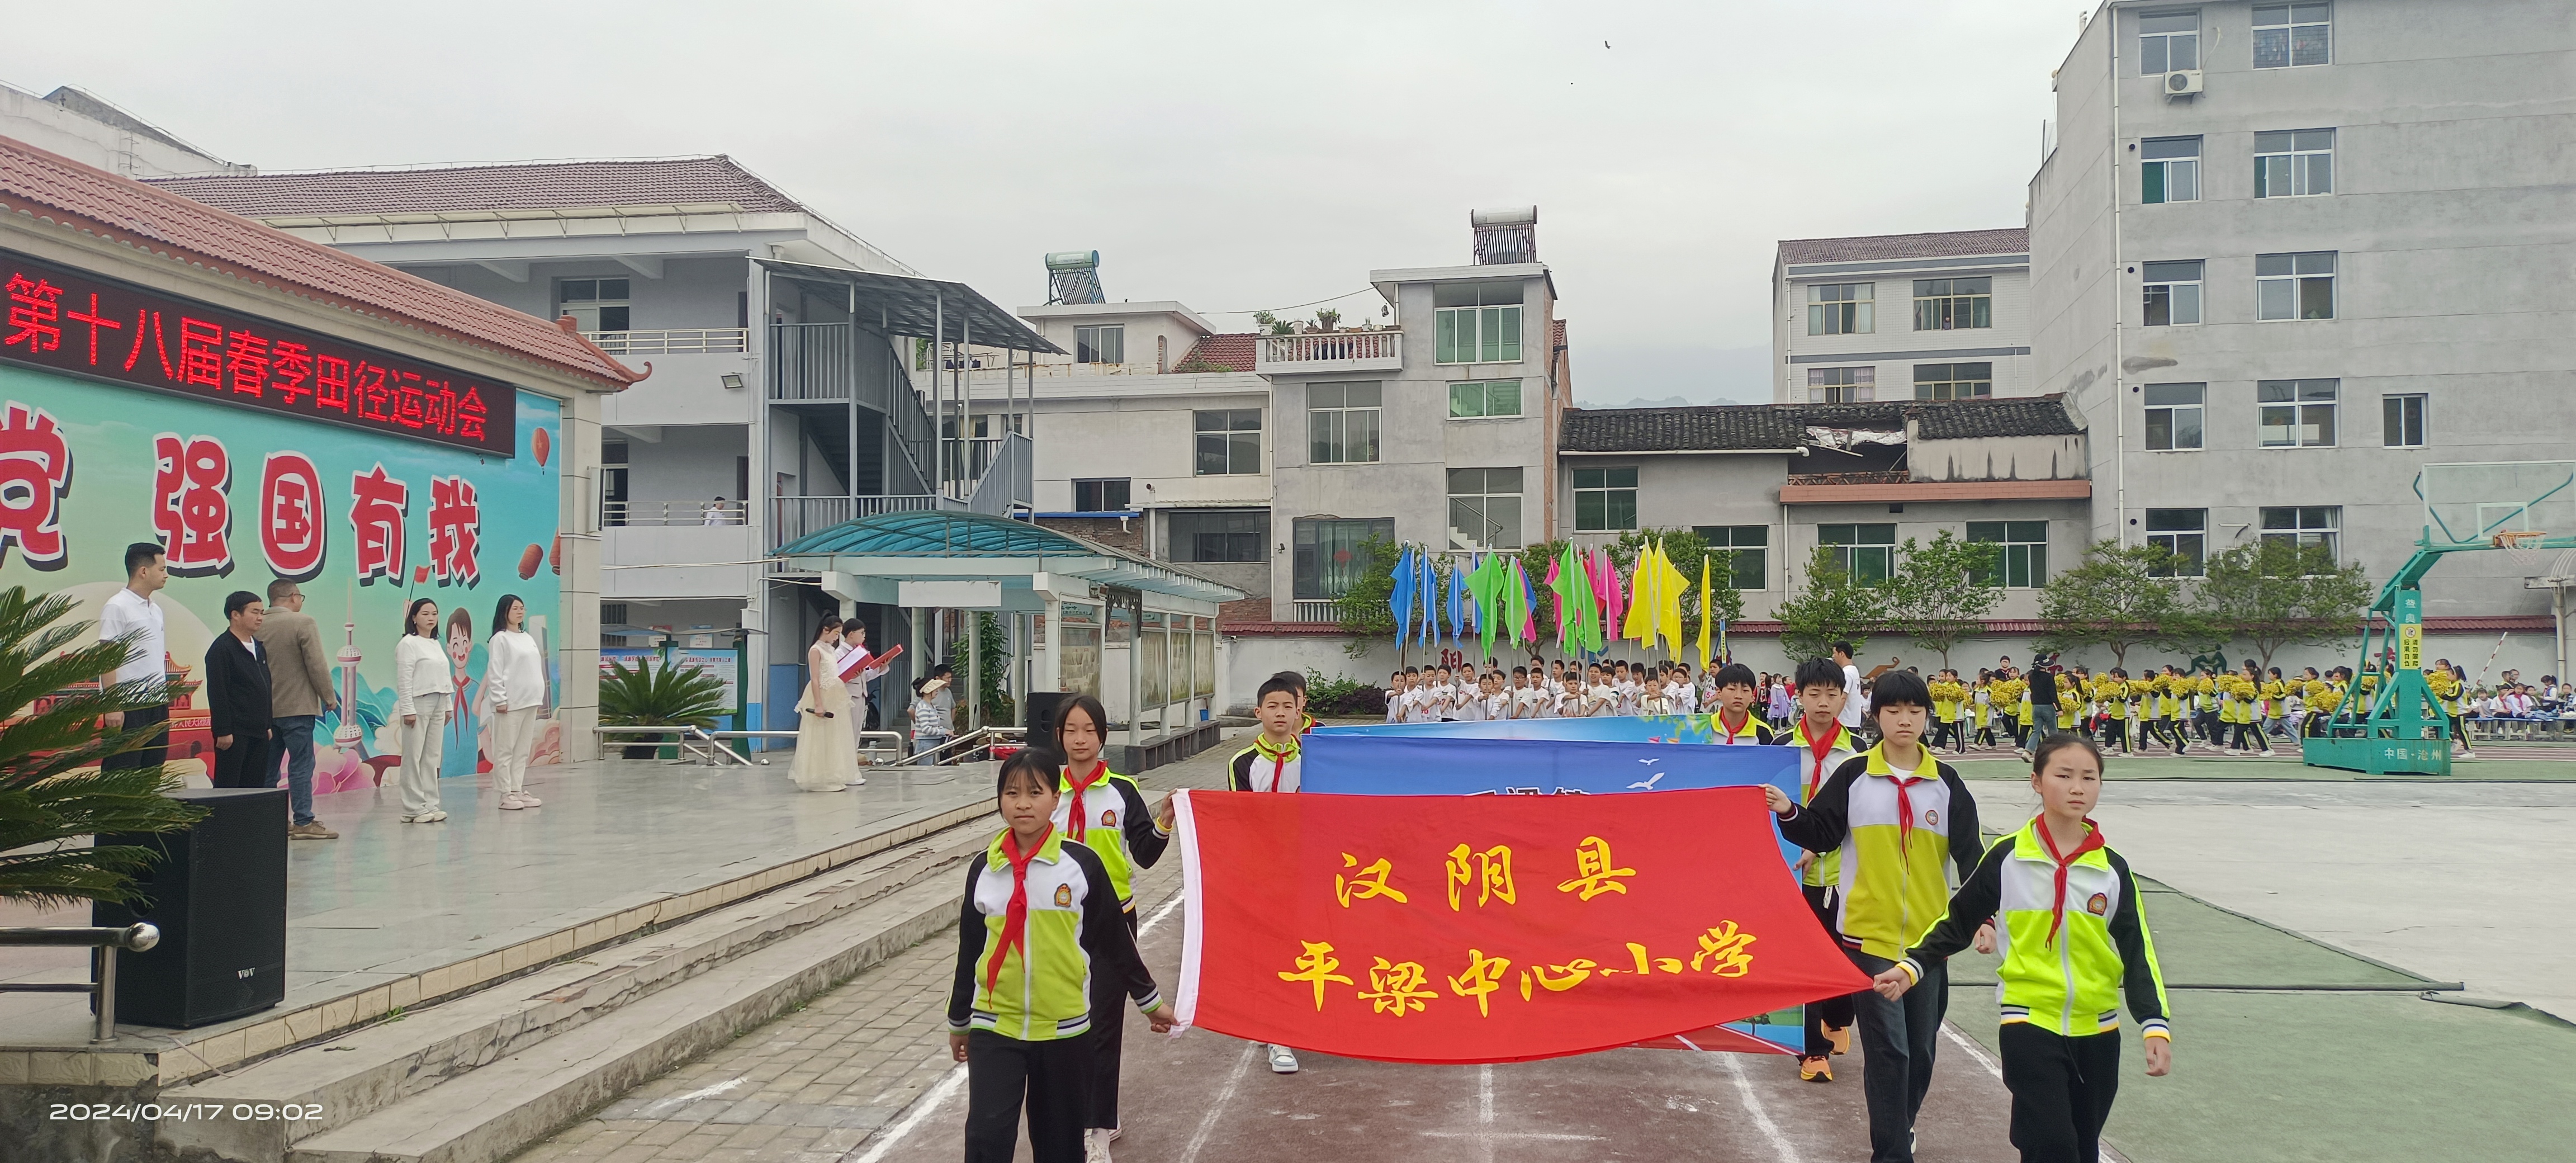 汉阴县平梁镇中心小学第十八届春季田径运动会开幕